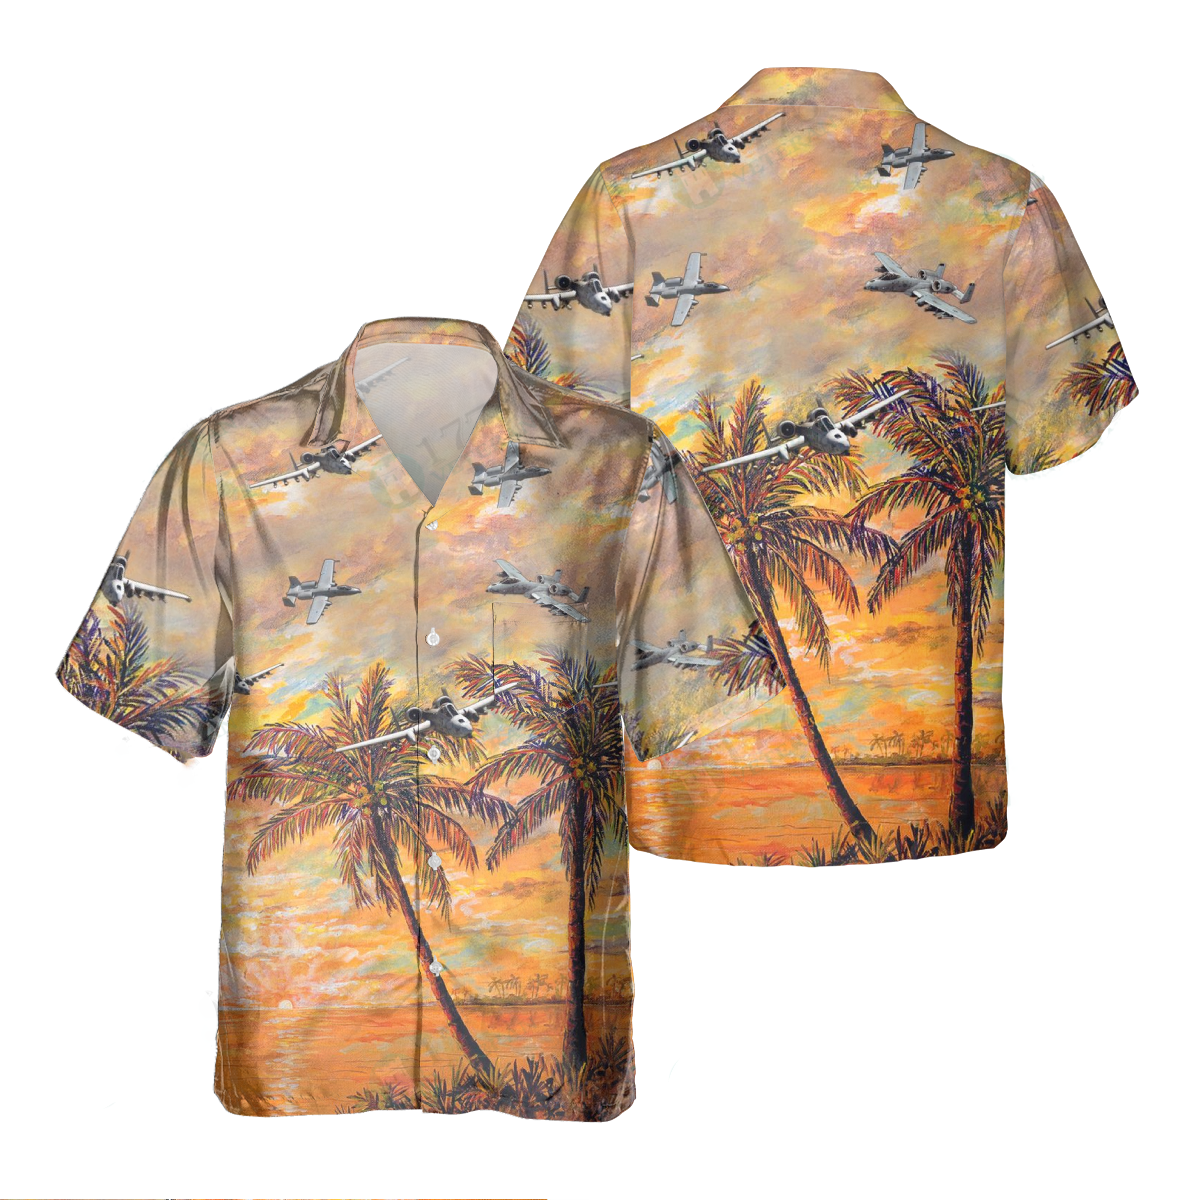 A-10 Thunderbolt Ii_Pocket Hawaiian Shirt/ Hawaiian Shirt for Men Dad Veteran/ Patriot Day